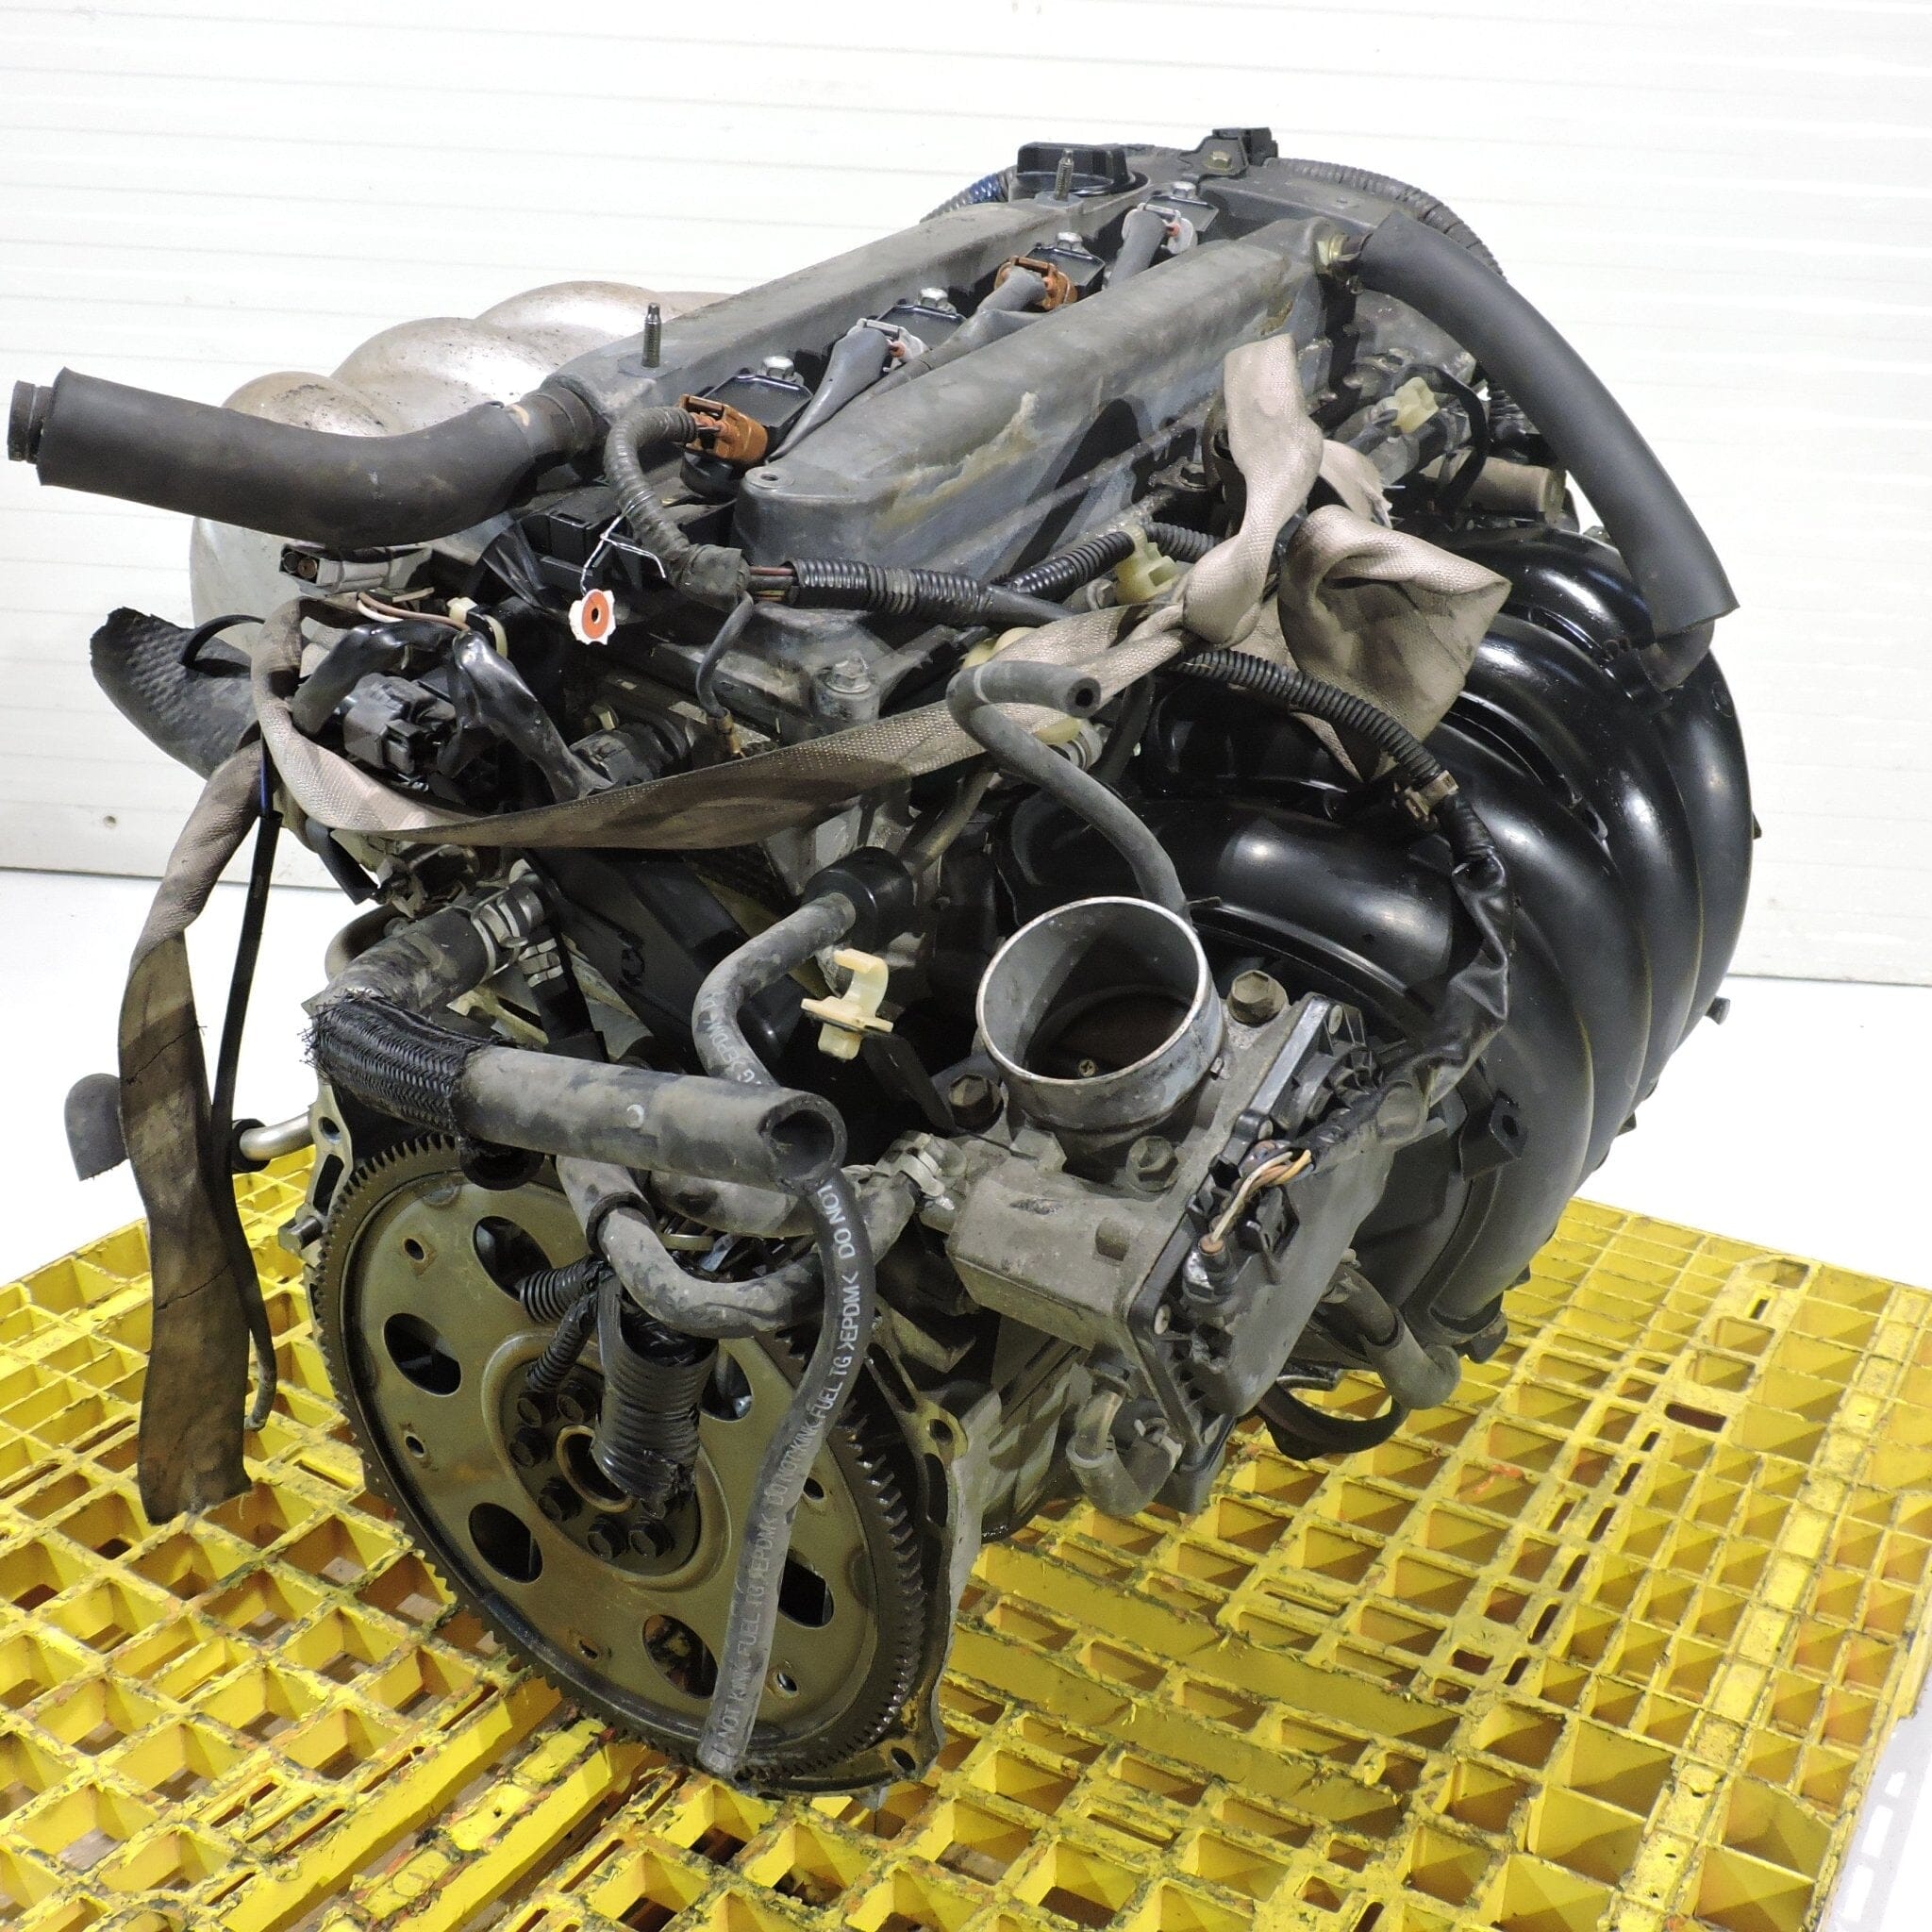 Toyota Highlander 2001-2007 2.4L JDM Engine Motor - 2AZ-FE 4-Cylinder